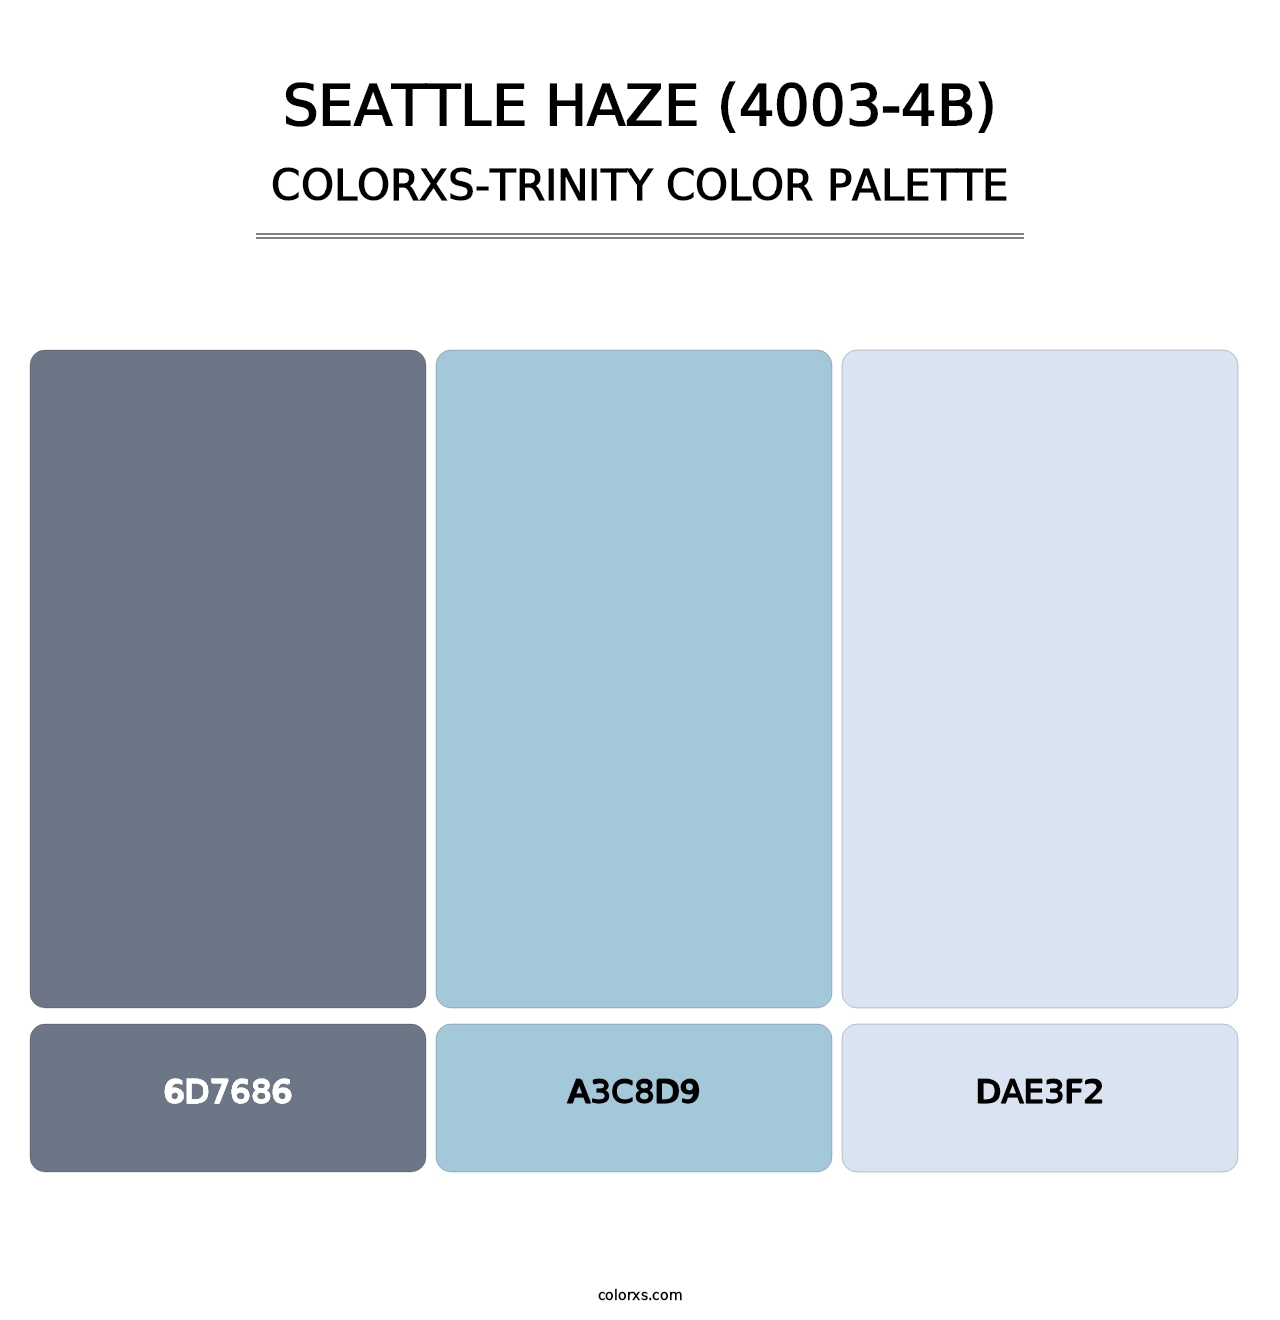 Seattle Haze (4003-4B) - Colorxs Trinity Palette